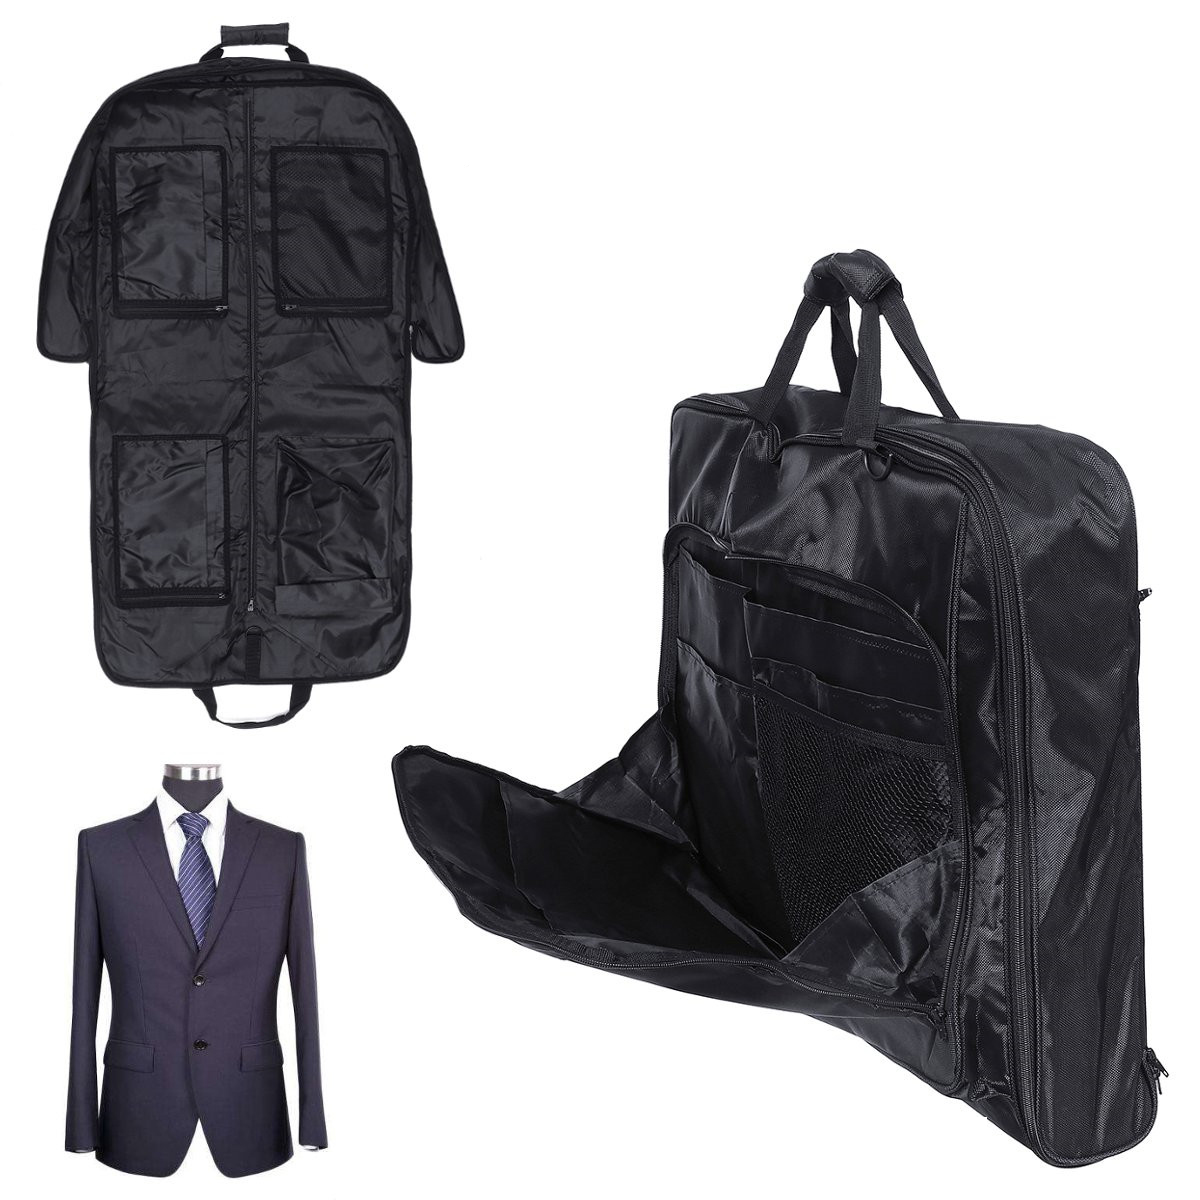 

Travel Багаж Гардеробный костюм Платье Швейная сумка для одежды Чехол Чехол для чемодана Сумка